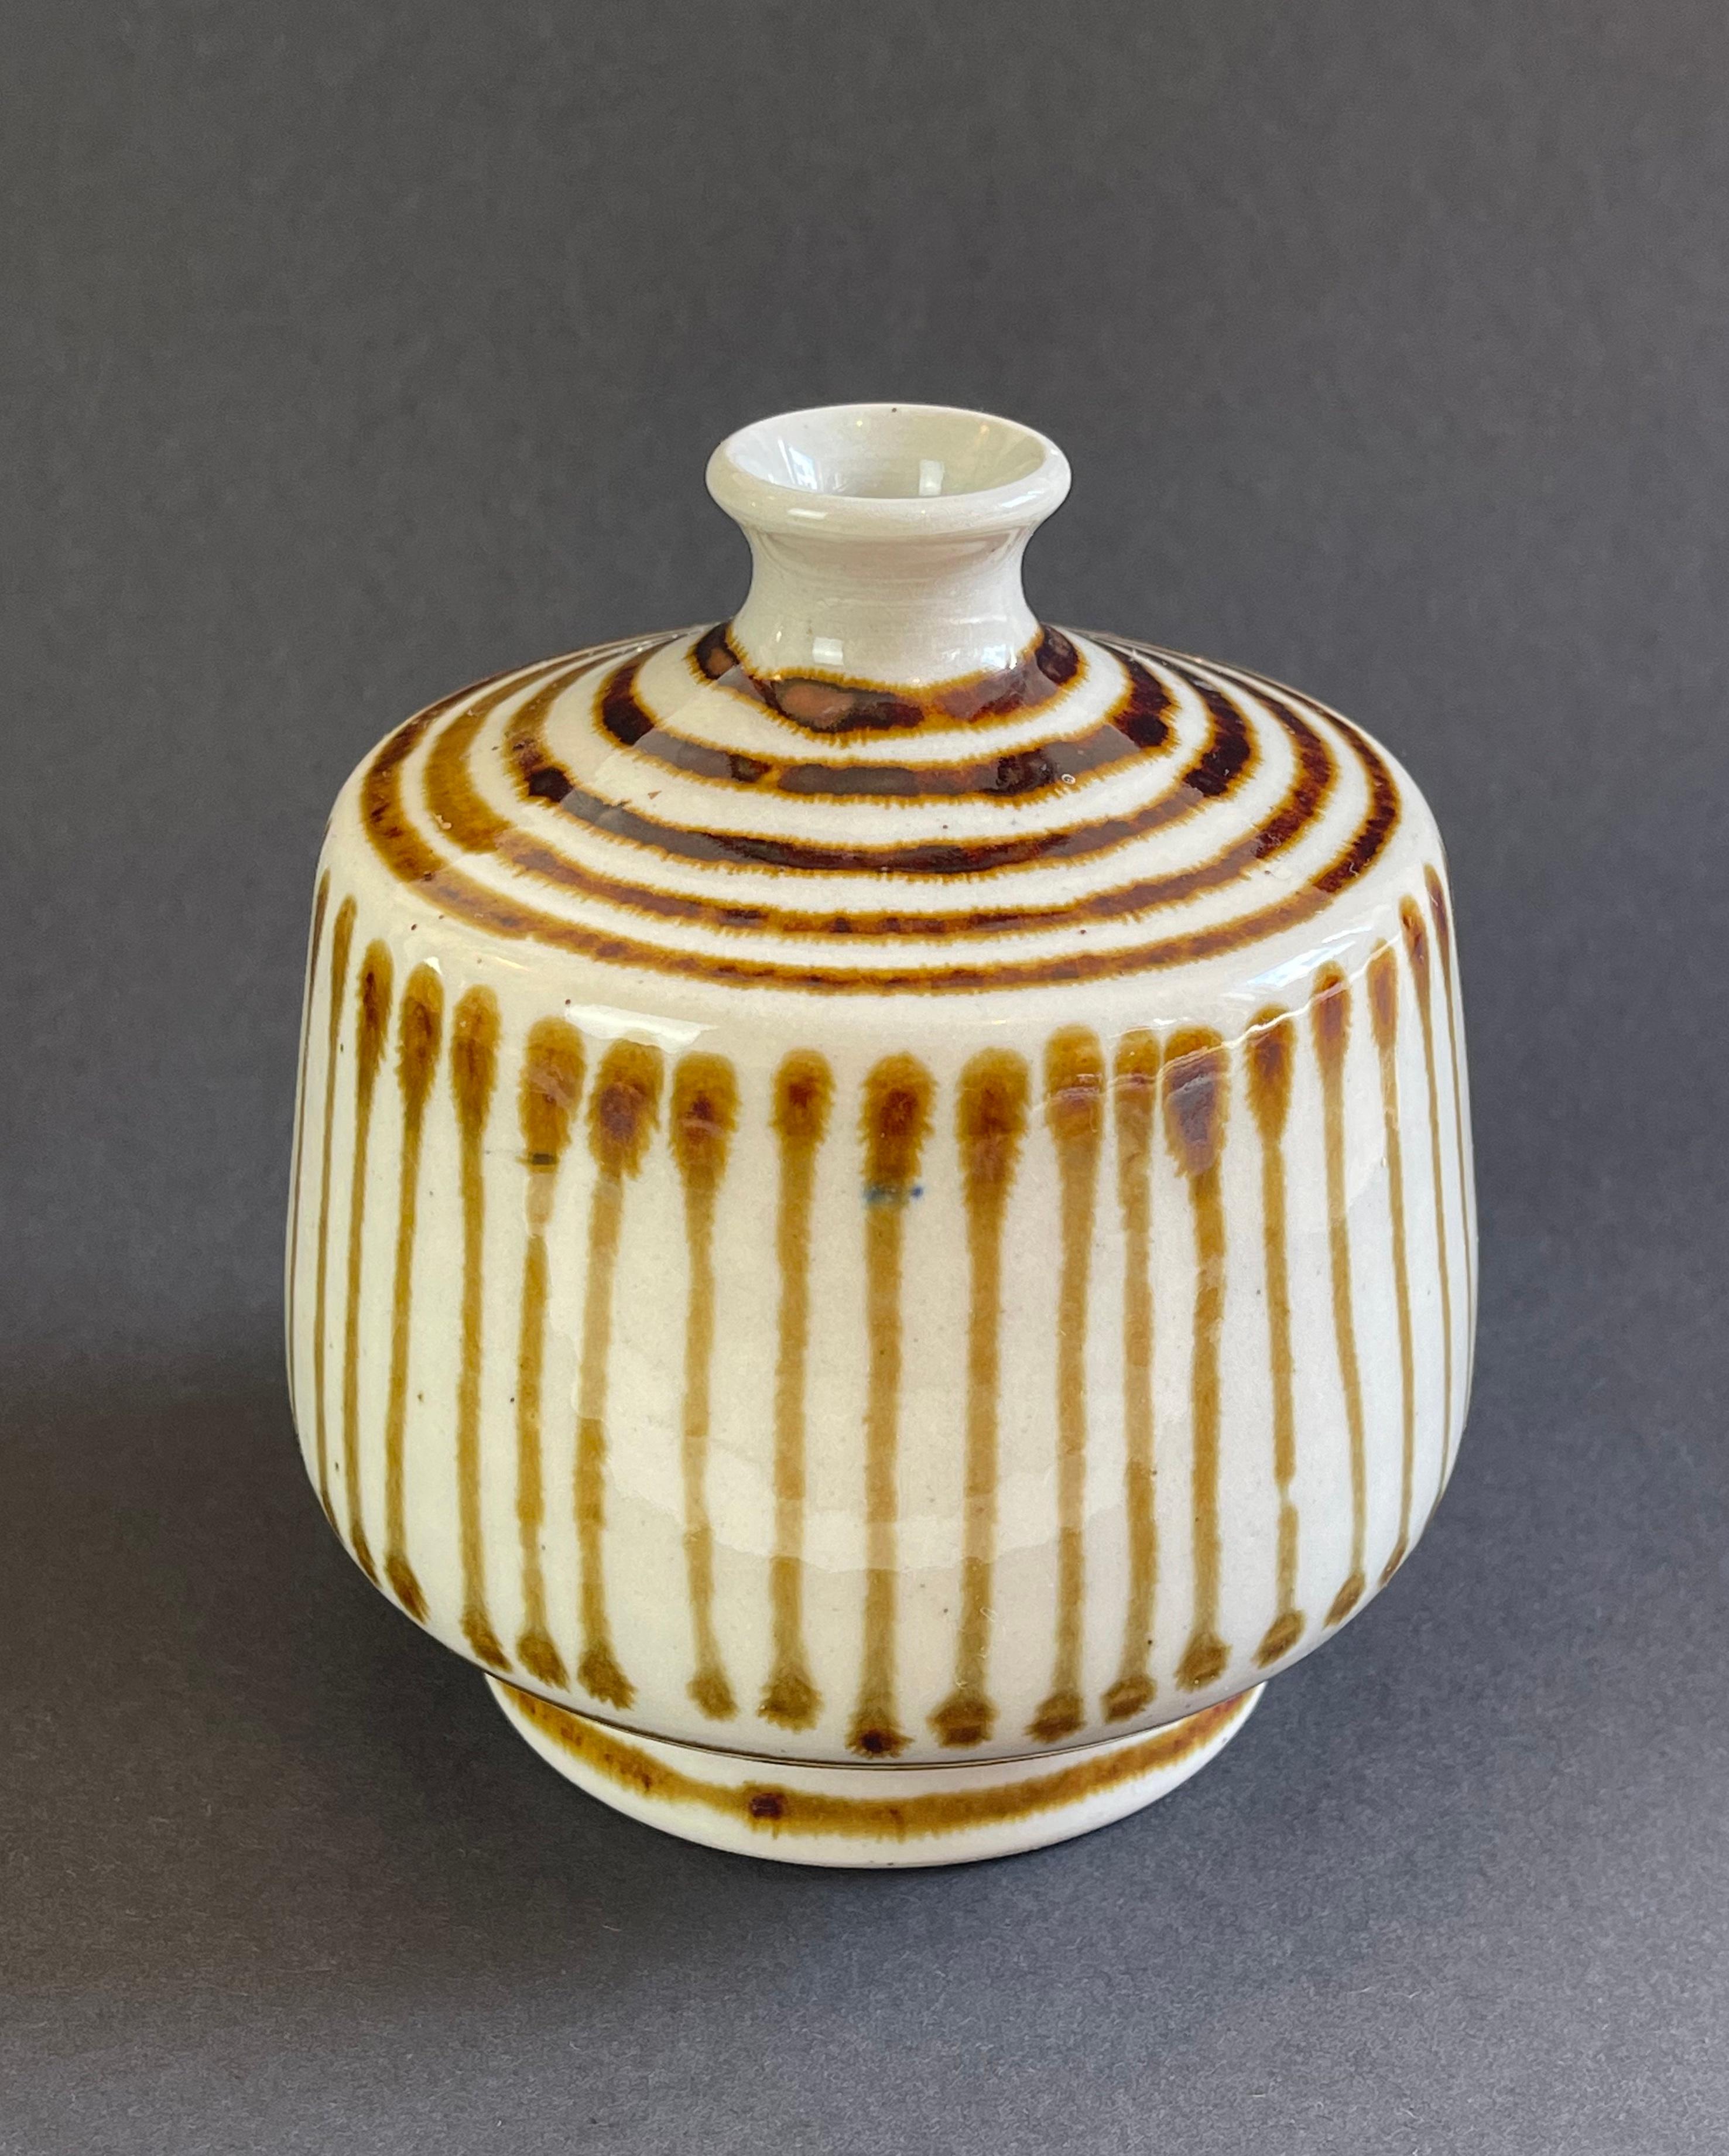 Möglicherweise dänischen Ursprungs ist diese Vase, handgefertigt und handbemalt aus Keramik.
Schöne karamellfarbene Streifen auf dem naturbeigen Grundmaterial.
Auch dieses Stück mit einem Hauch von japanischem Stil ist ein einzigartiger